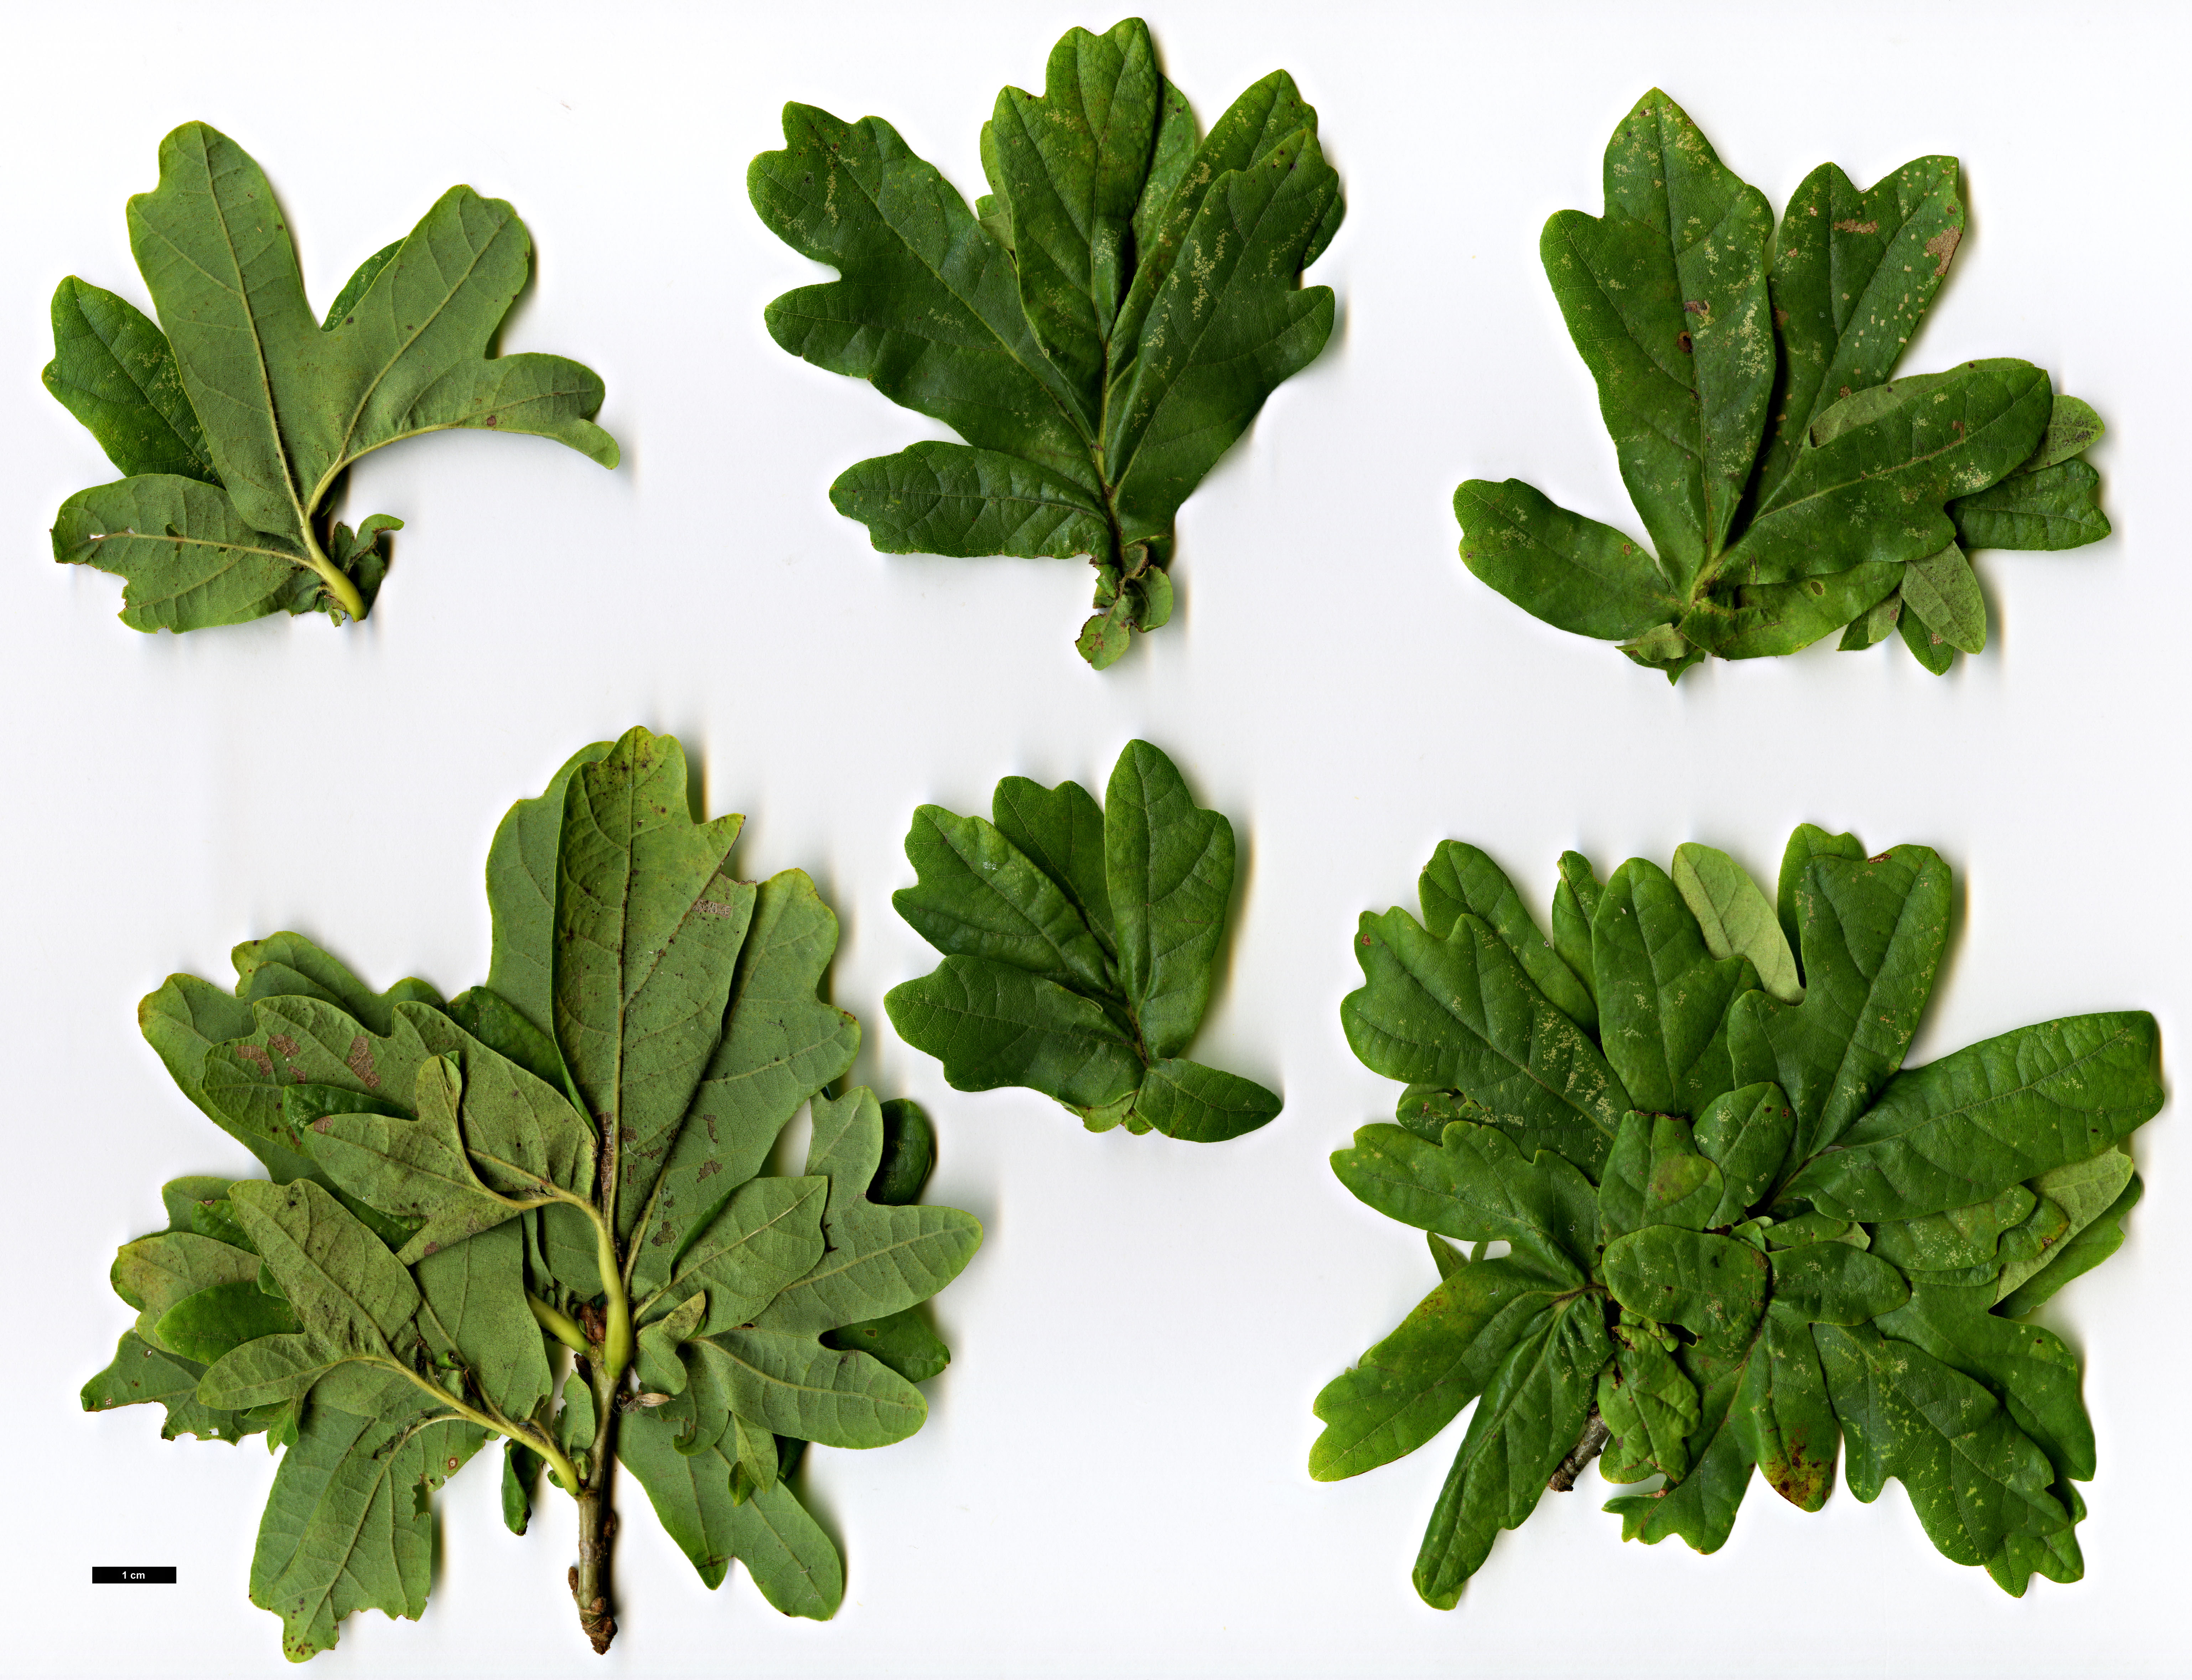 High resolution image: Family: Fagaceae - Genus: Quercus - Taxon: ×haynaldiana - SpeciesSub: 'Crisnetto' (Q.frainetto × Q.robur)